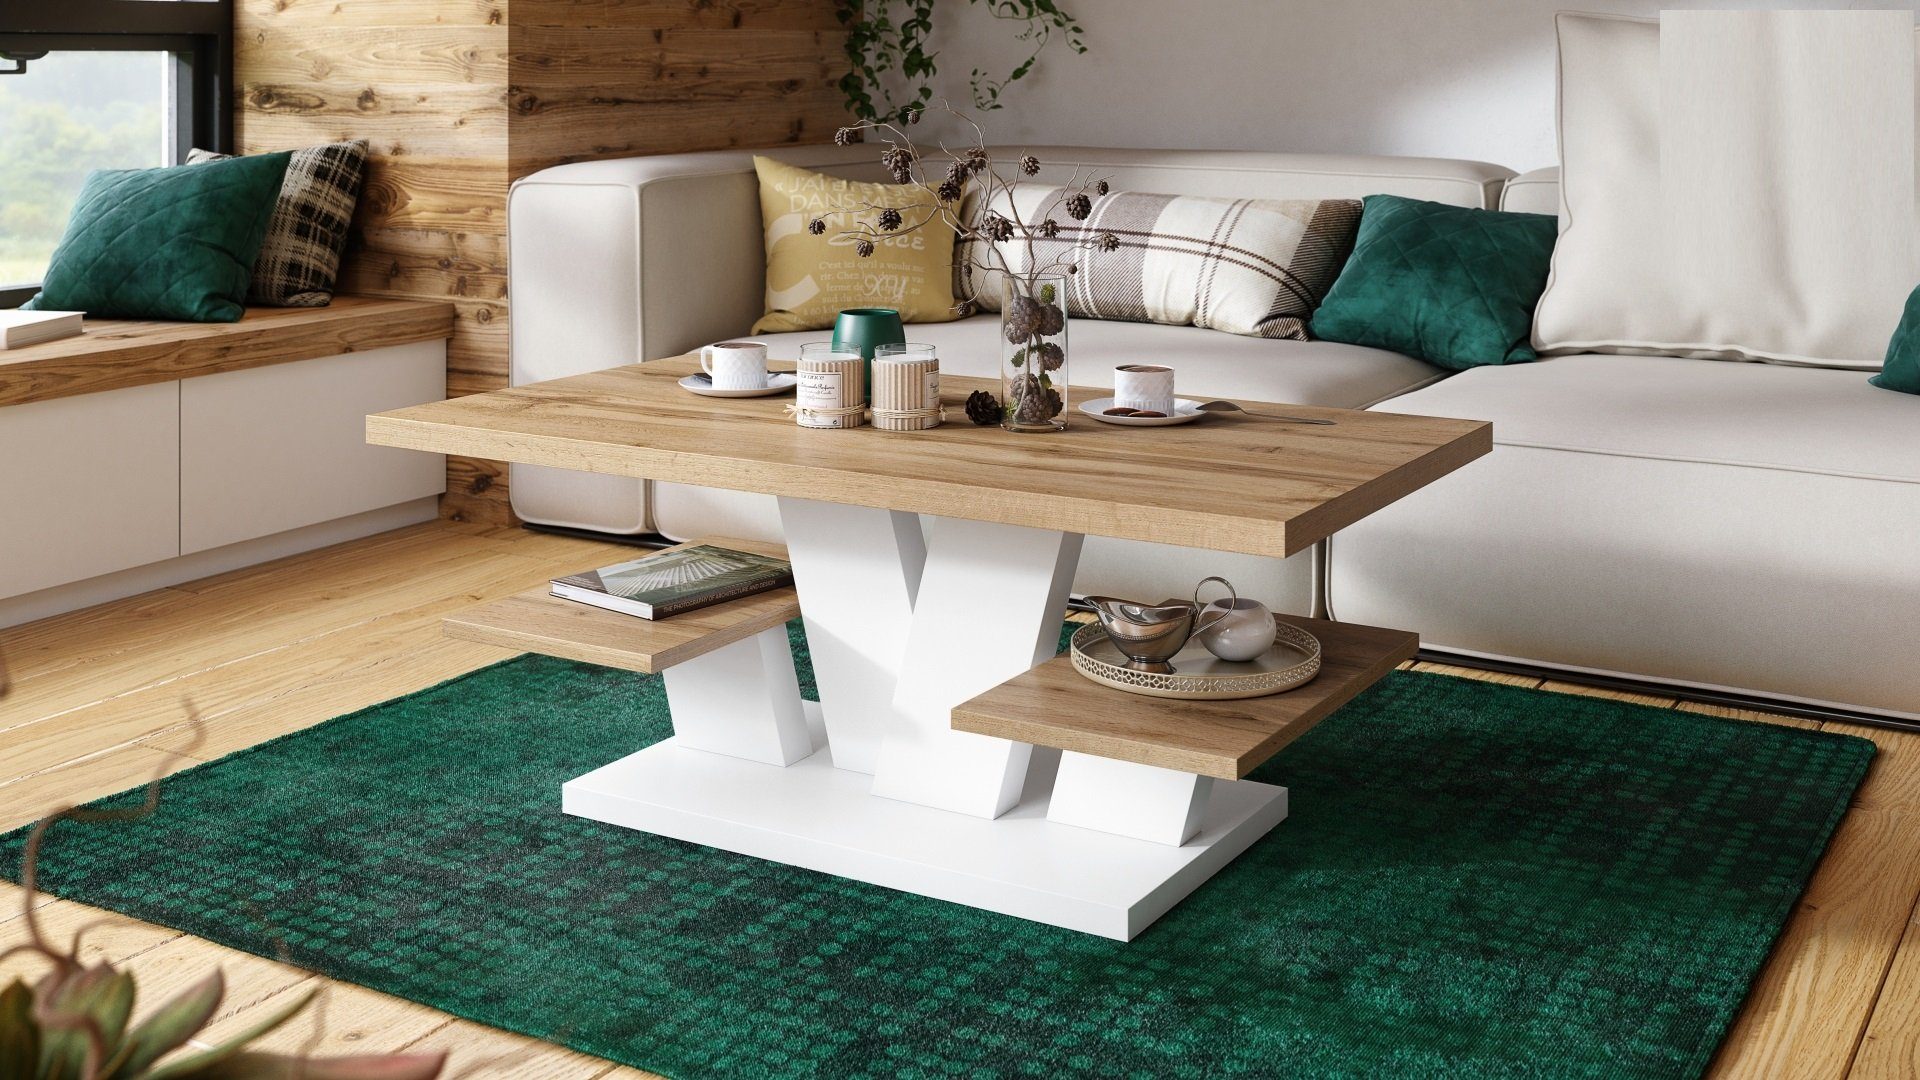 Tisch designimpex Wotan Couchtisch Wohnzimmertisch Design Viva Eiche Weiß - matt 110x60x45 Ablagefläche cm mit